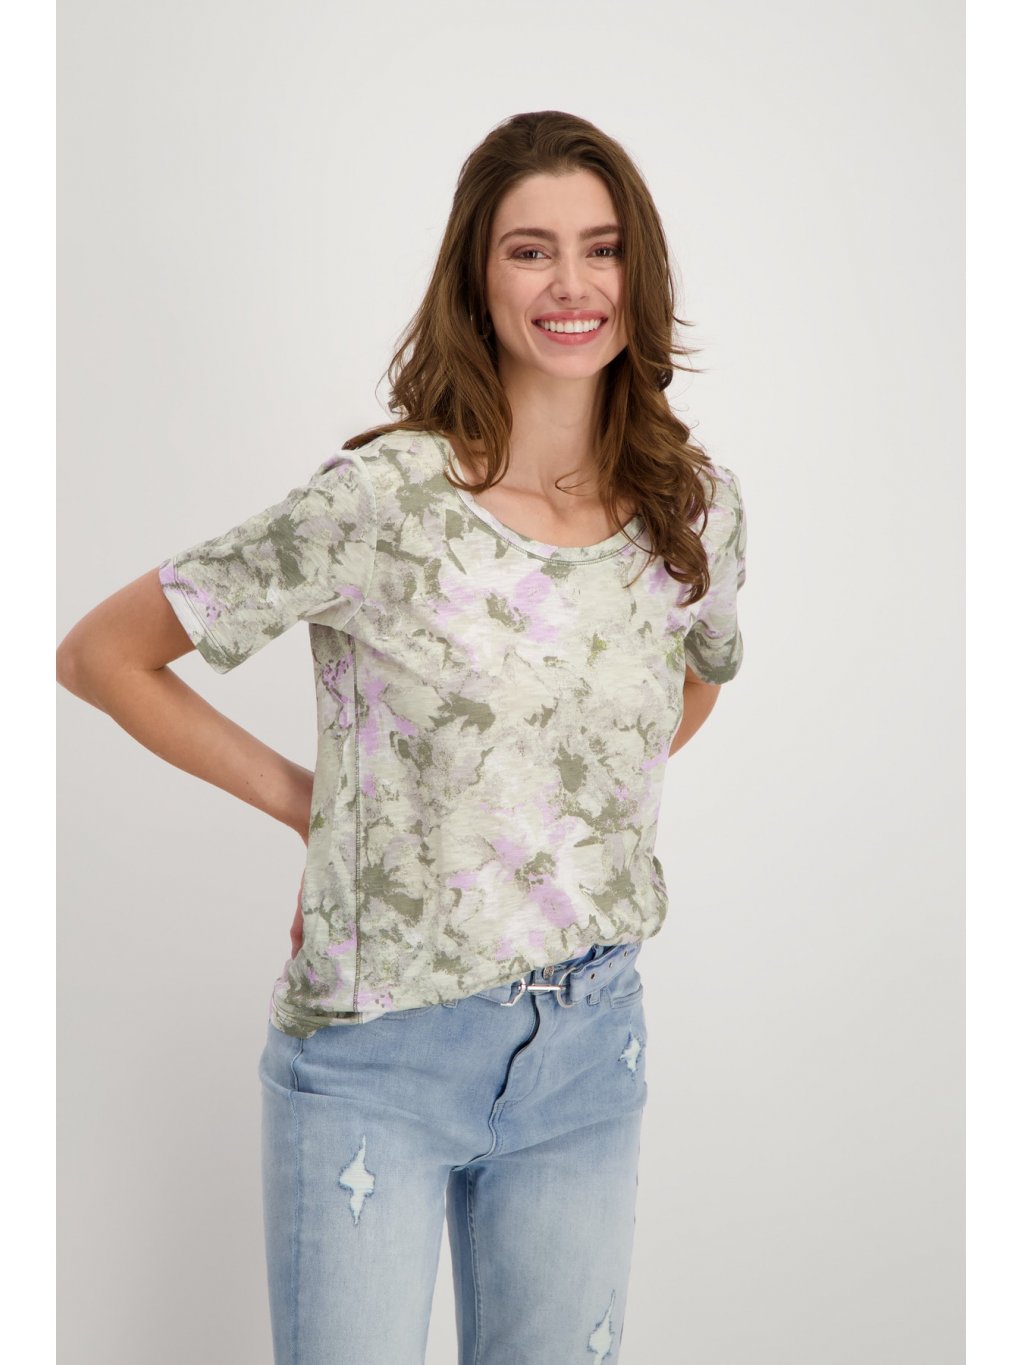 Tričko Monari 8234 zeleno-fialkové abstraktní květy